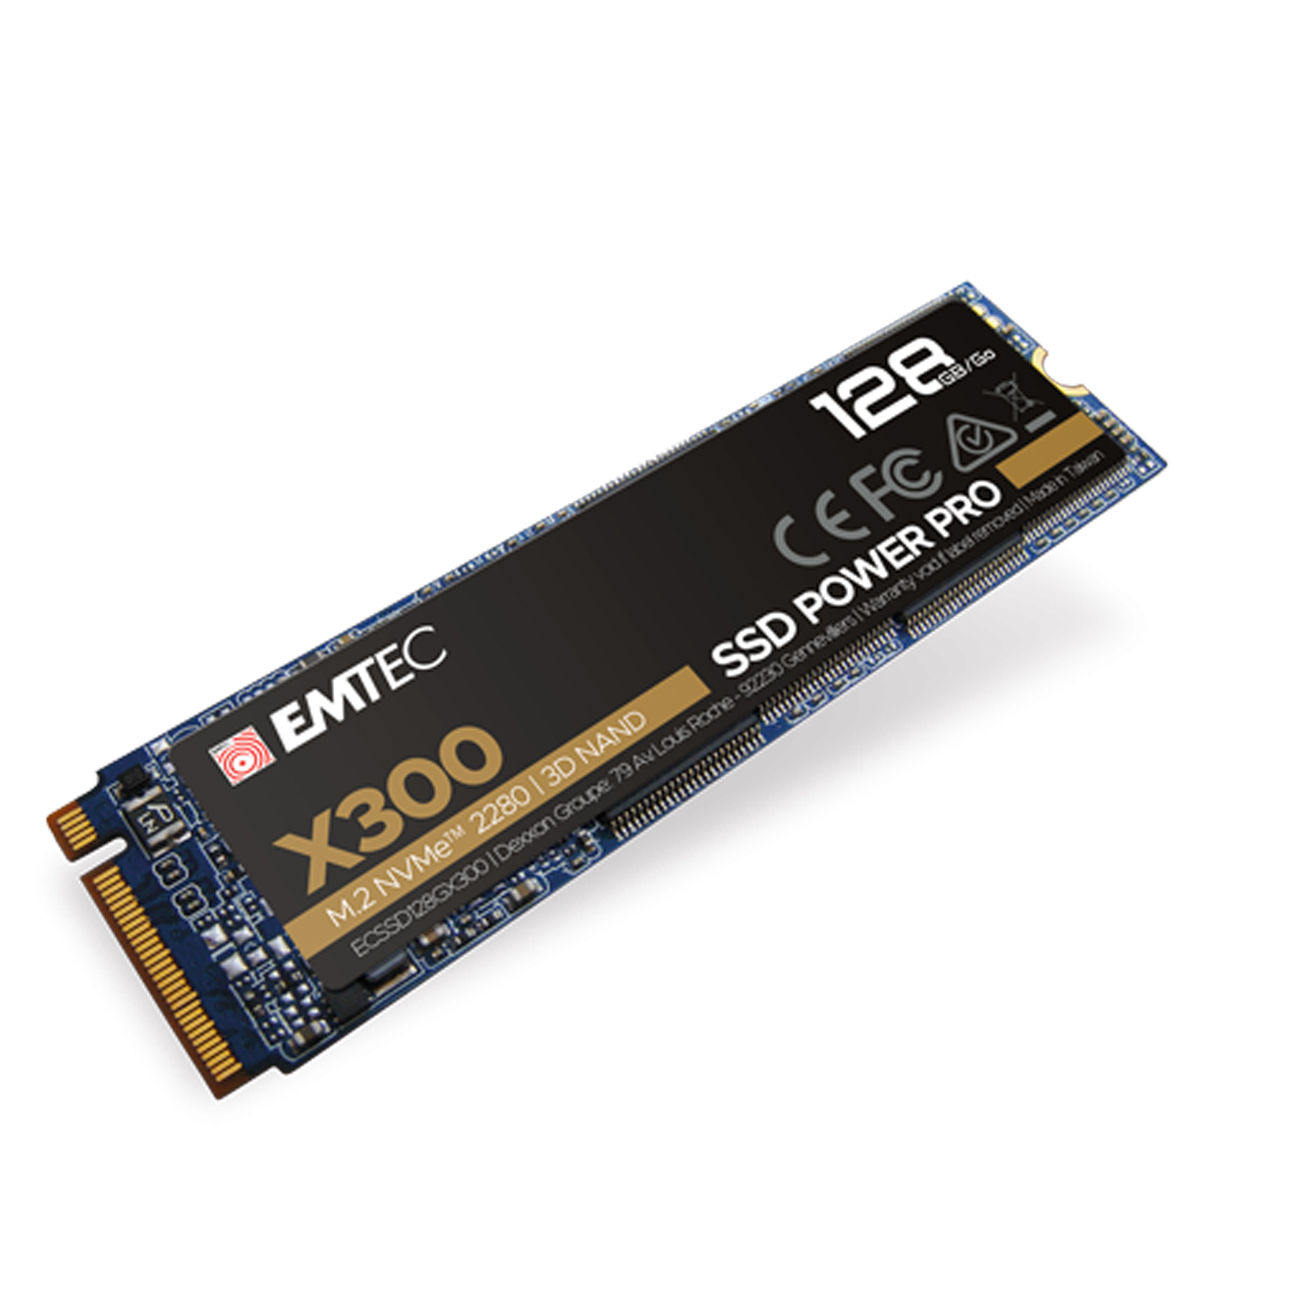 EMTEC SSD 128GB M.2 PCIE X300 NVME M2 2280